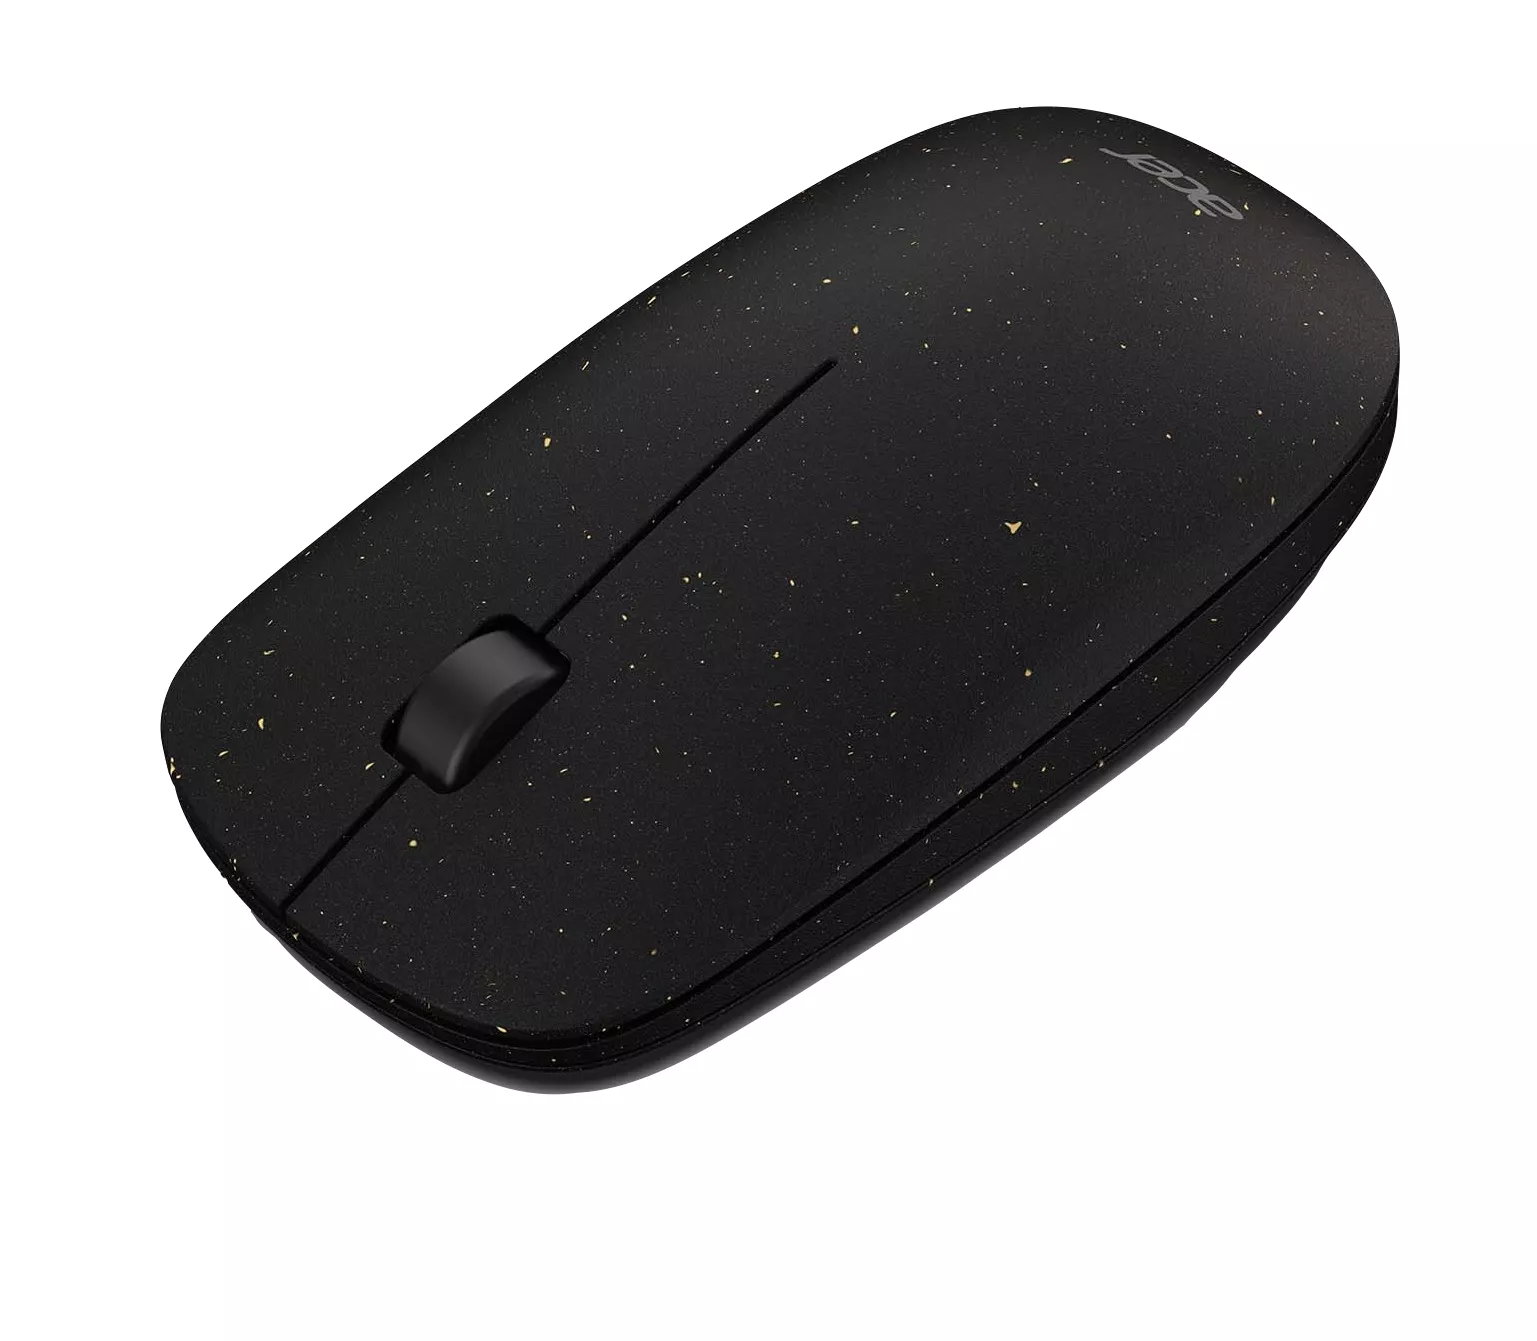 Vente ACER VERO 2.4G wireless optical mouse black au meilleur prix